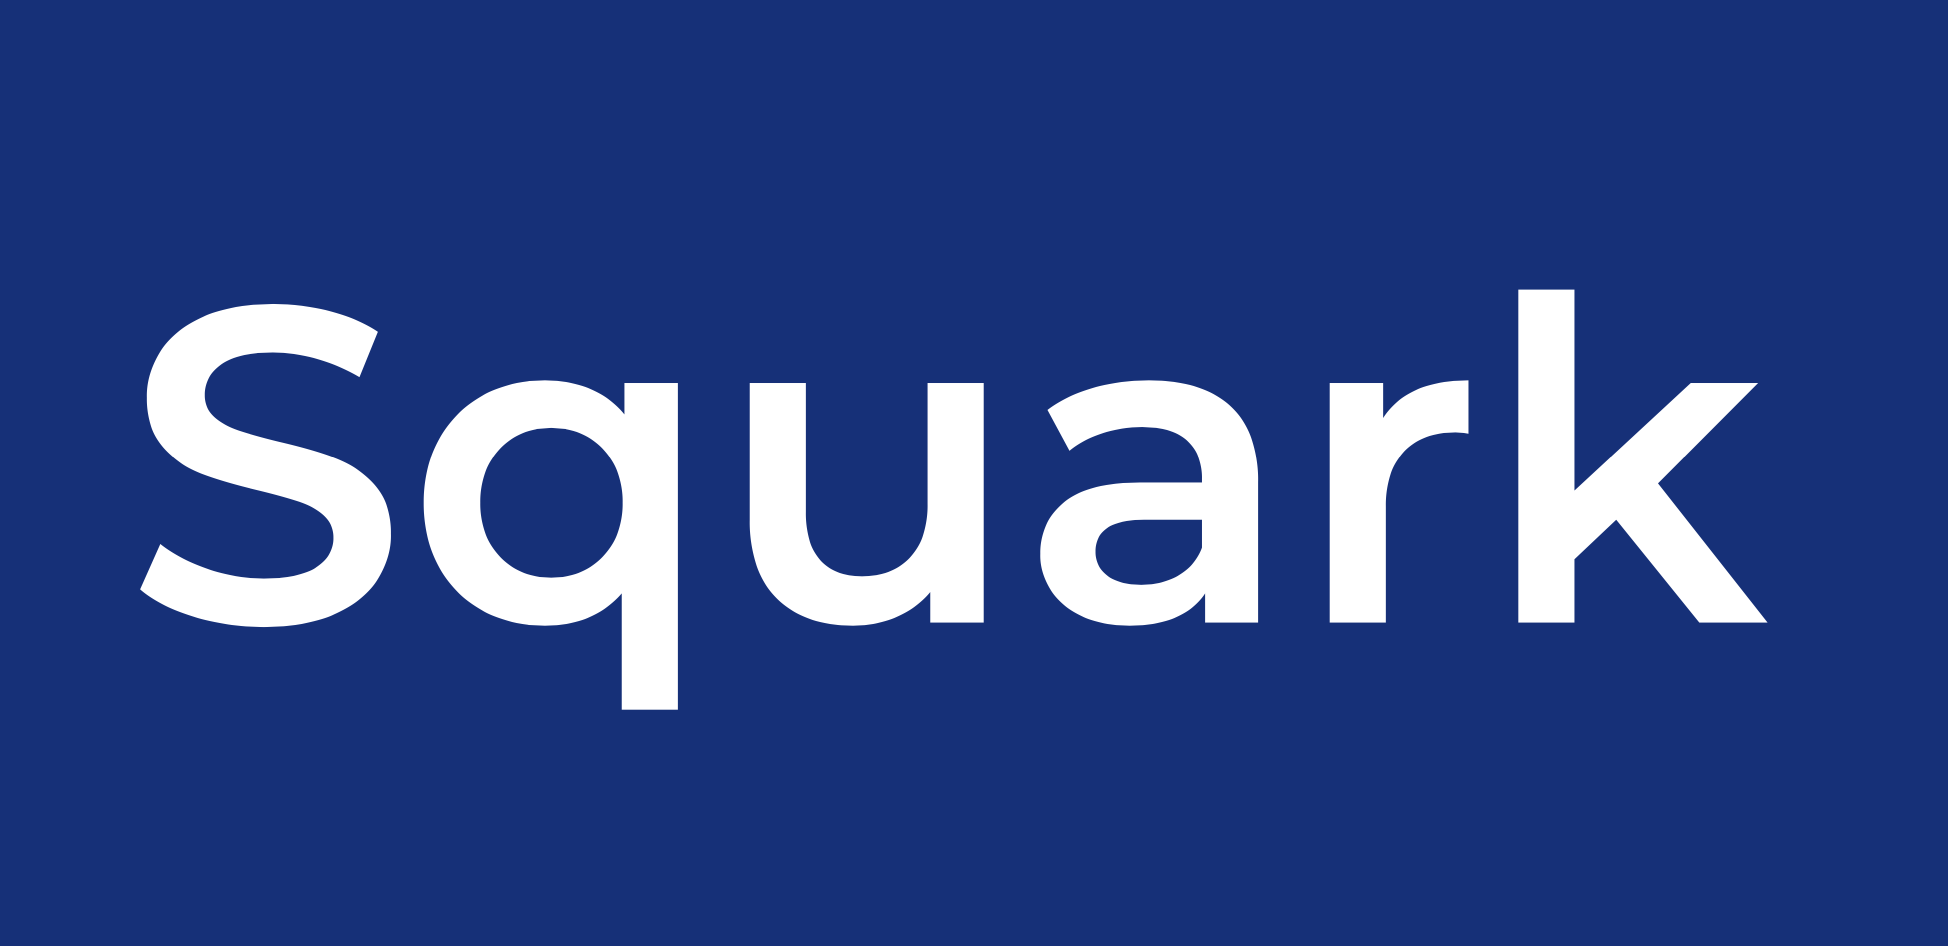 Exemple d'utilisations du logo autorisé Squark